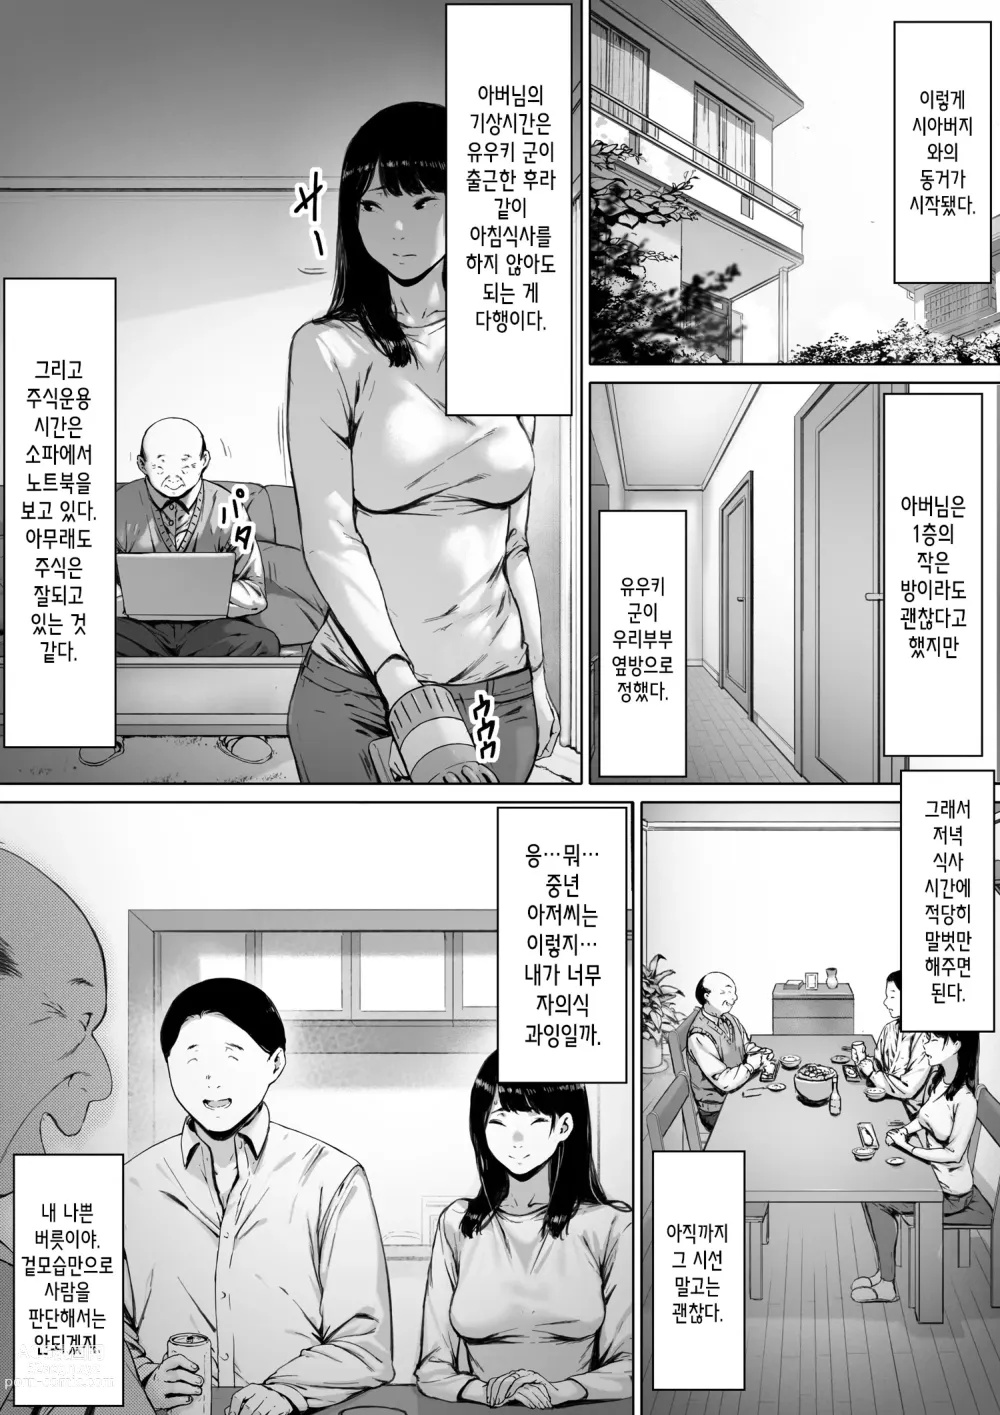 Page 14 of doujinshi 행복한 신혼생활을 보냈어야 했는데 시아버지와 동거하게 됐다 행복한 신혼생활을 보냈어야 했는데